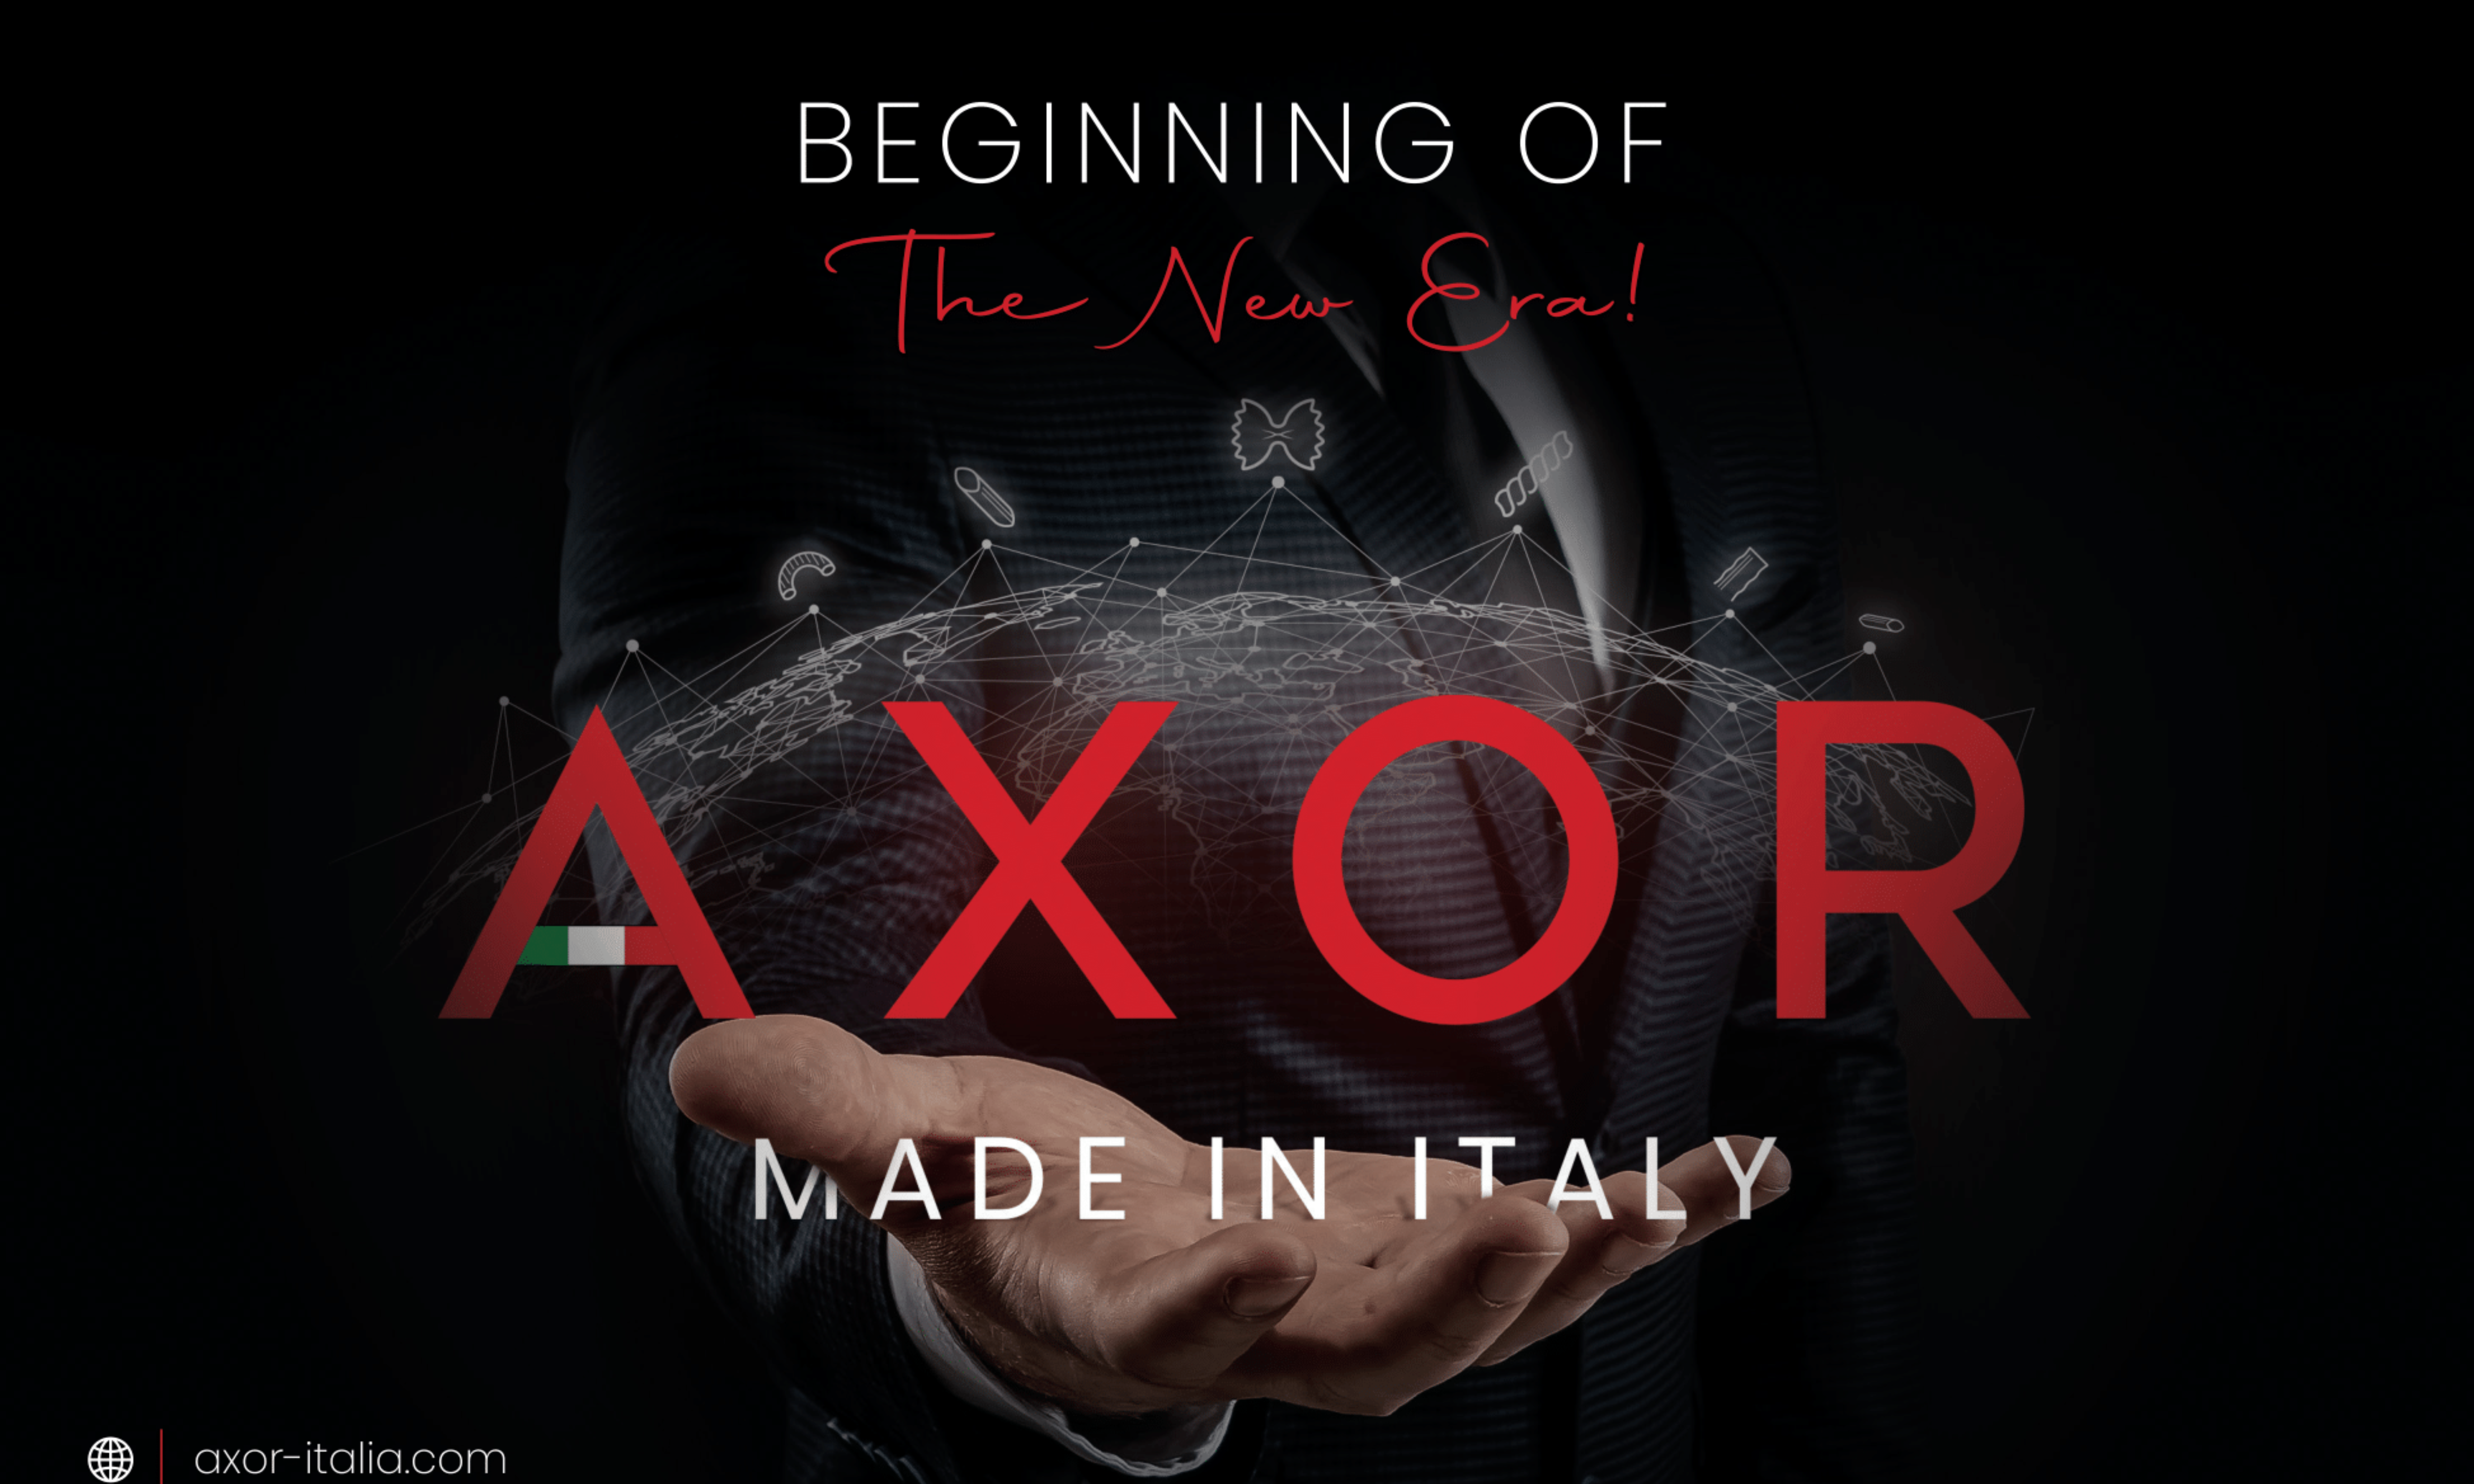 AXOR lancia il nuovo logo compiendo un passo avanti per il marchio